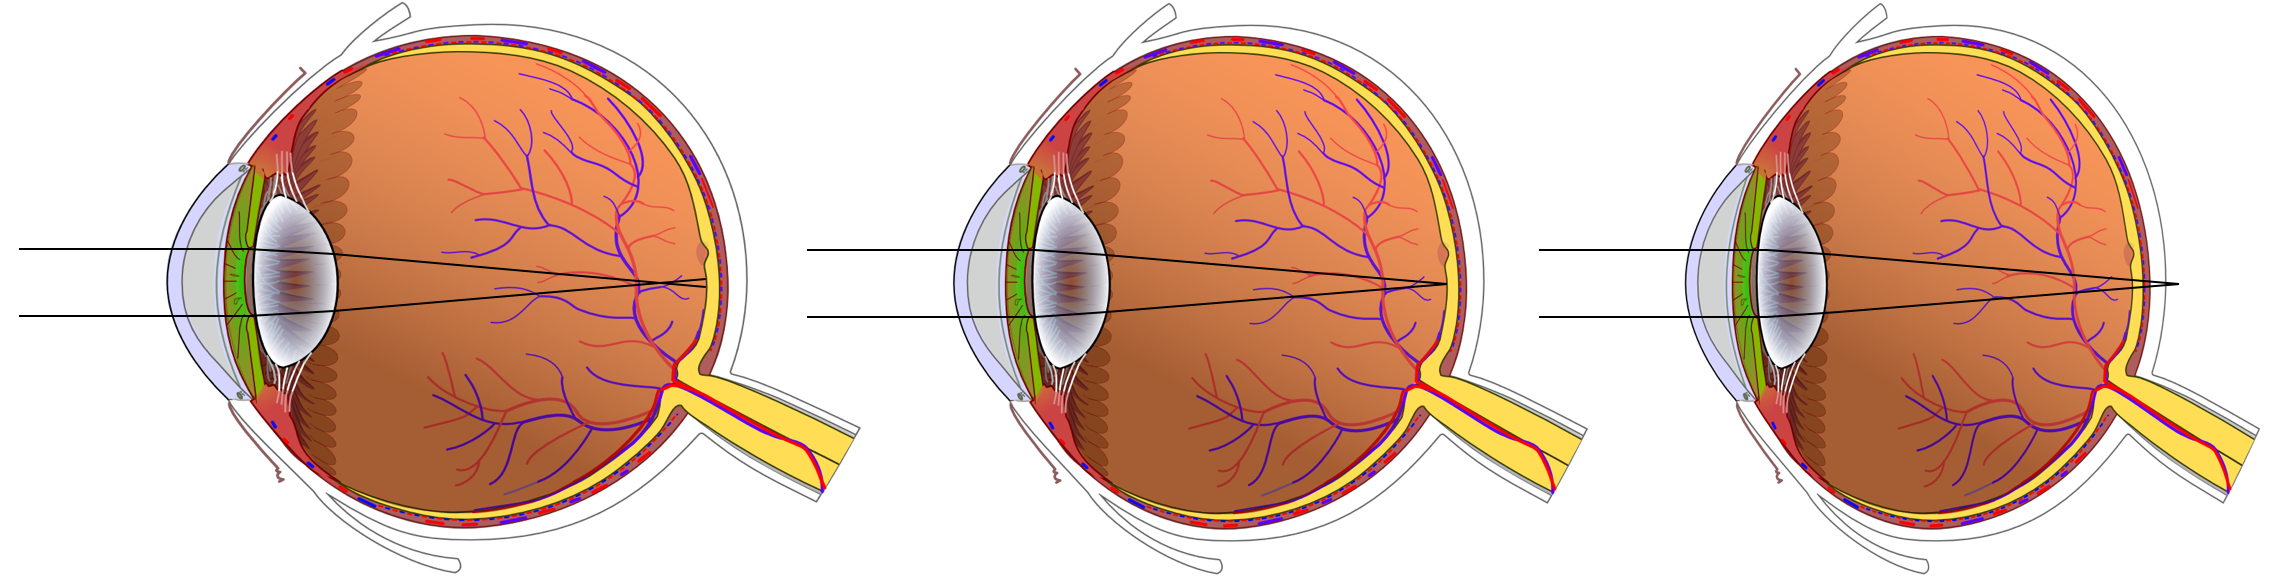 I ett närsynt öga (vänster) bryts ljusstrålarna framför näthinnan. I ett översynt öga (höger) bryts ljusstrålarna bakom näthinnan. Ett normalseende öga i mitten. Ögonens deformation har överdrivits. 